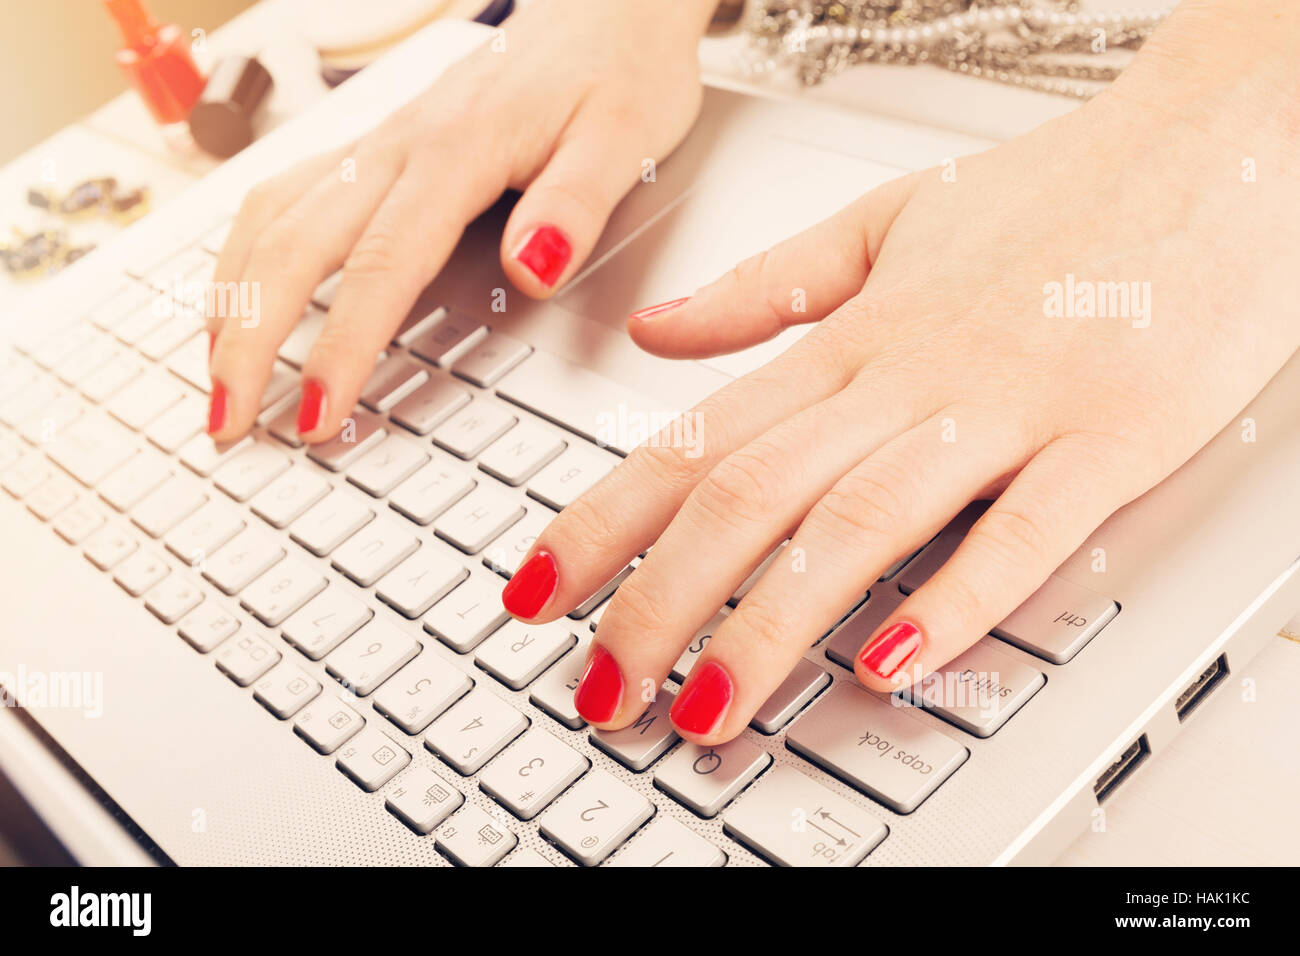 Mode Frau mit rot lackierten Nägeln am Laptop arbeiten. Schreiben von Blog-Konzept Stockfoto